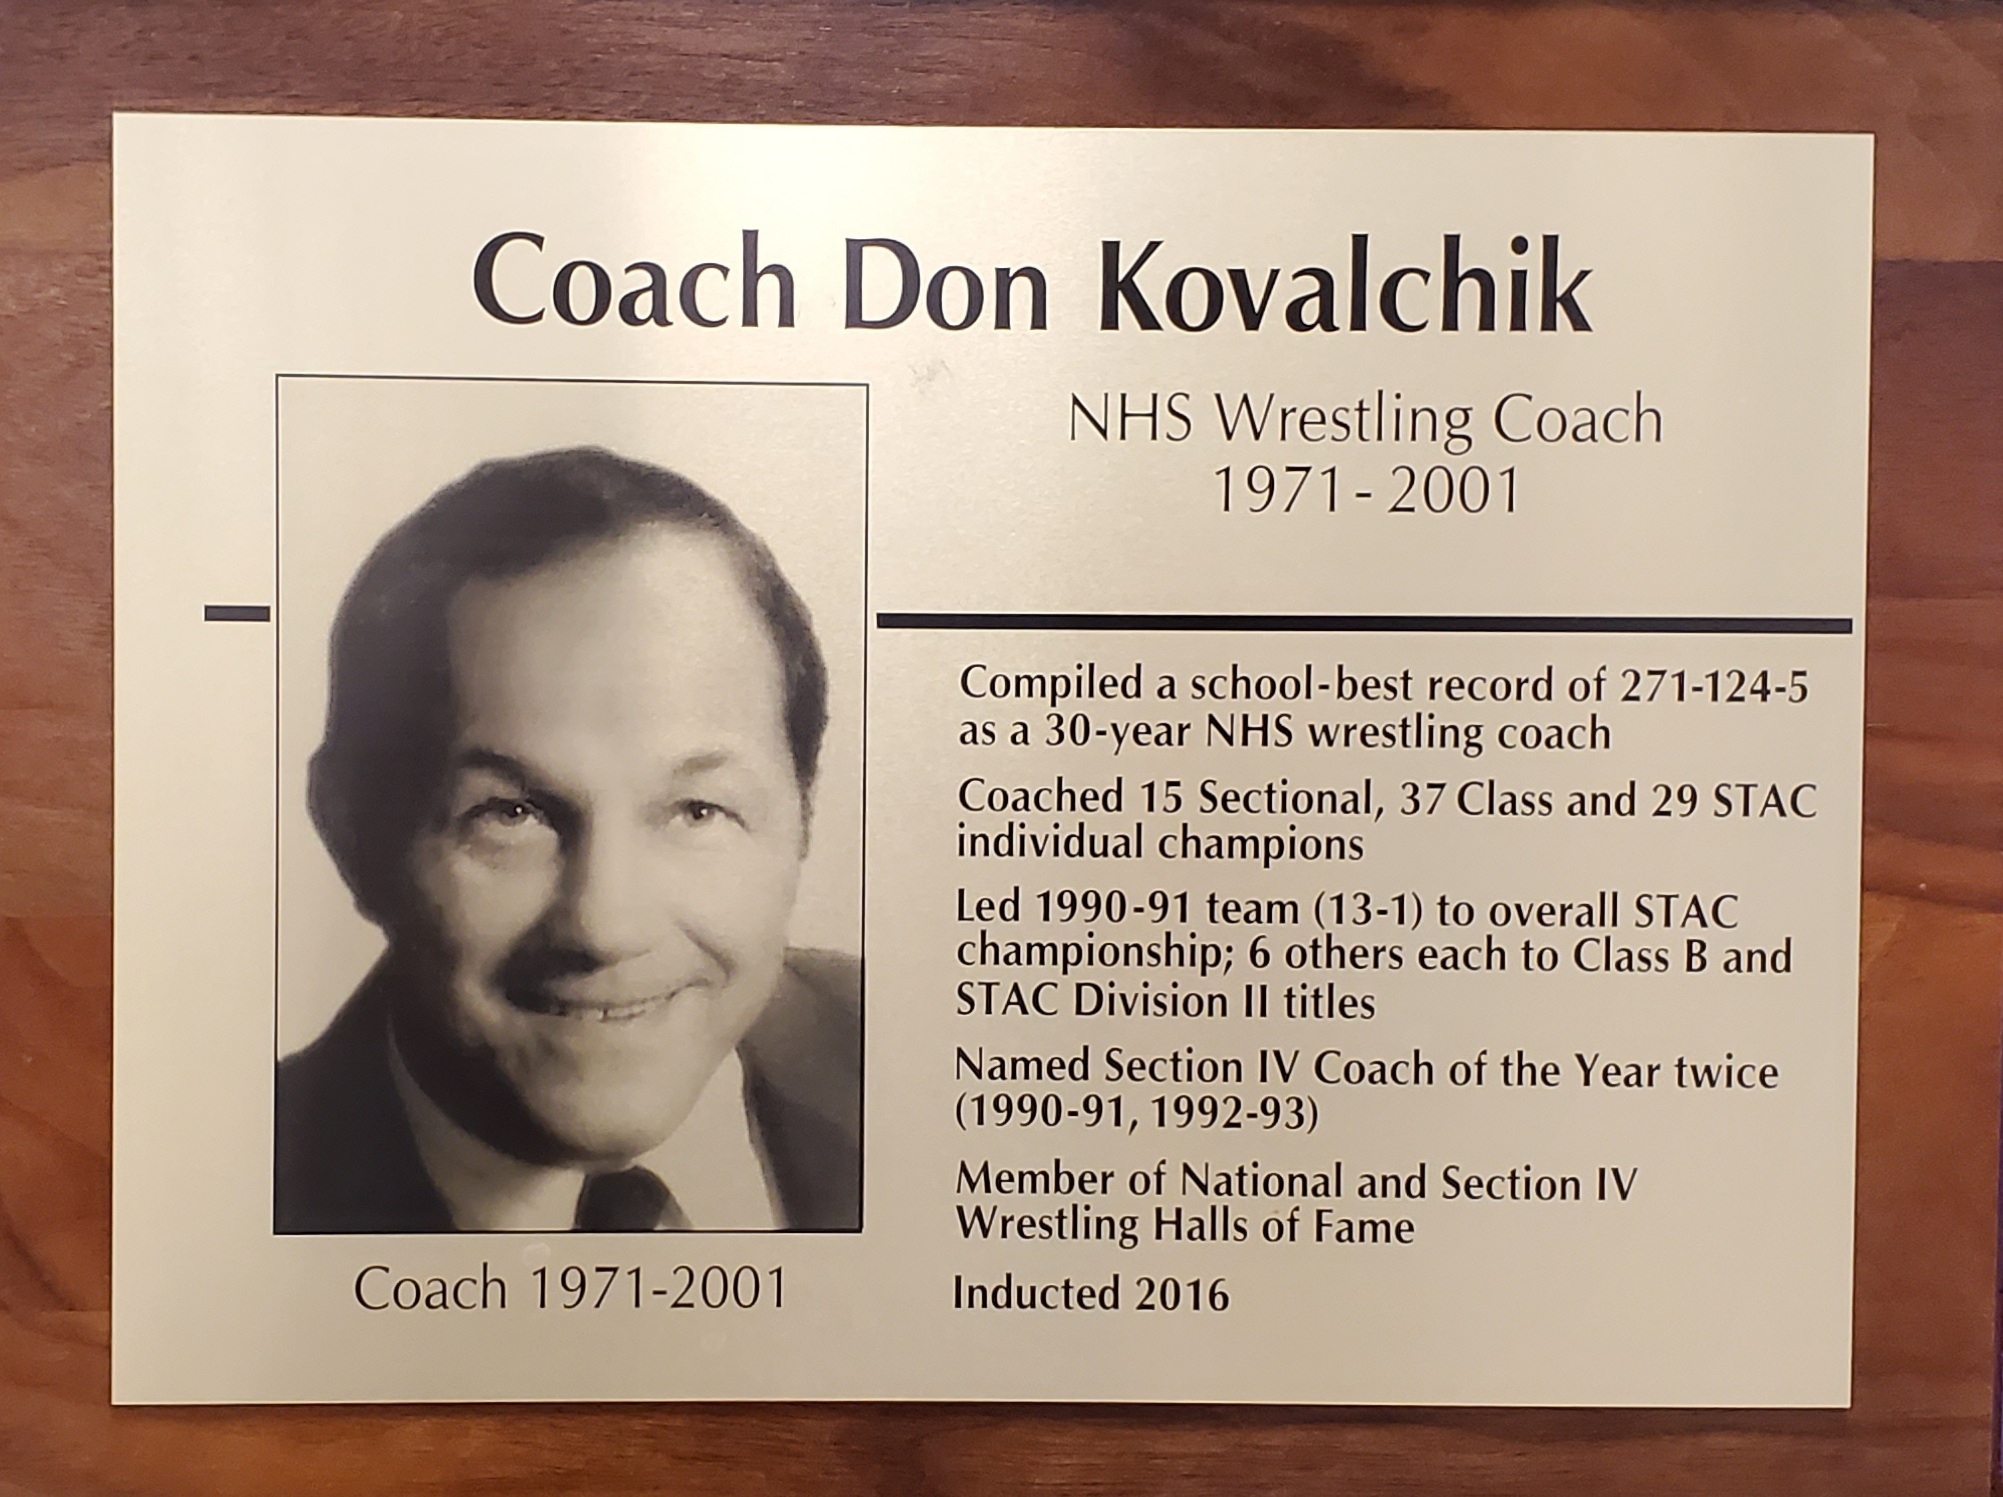 Coach Don Kovalchik